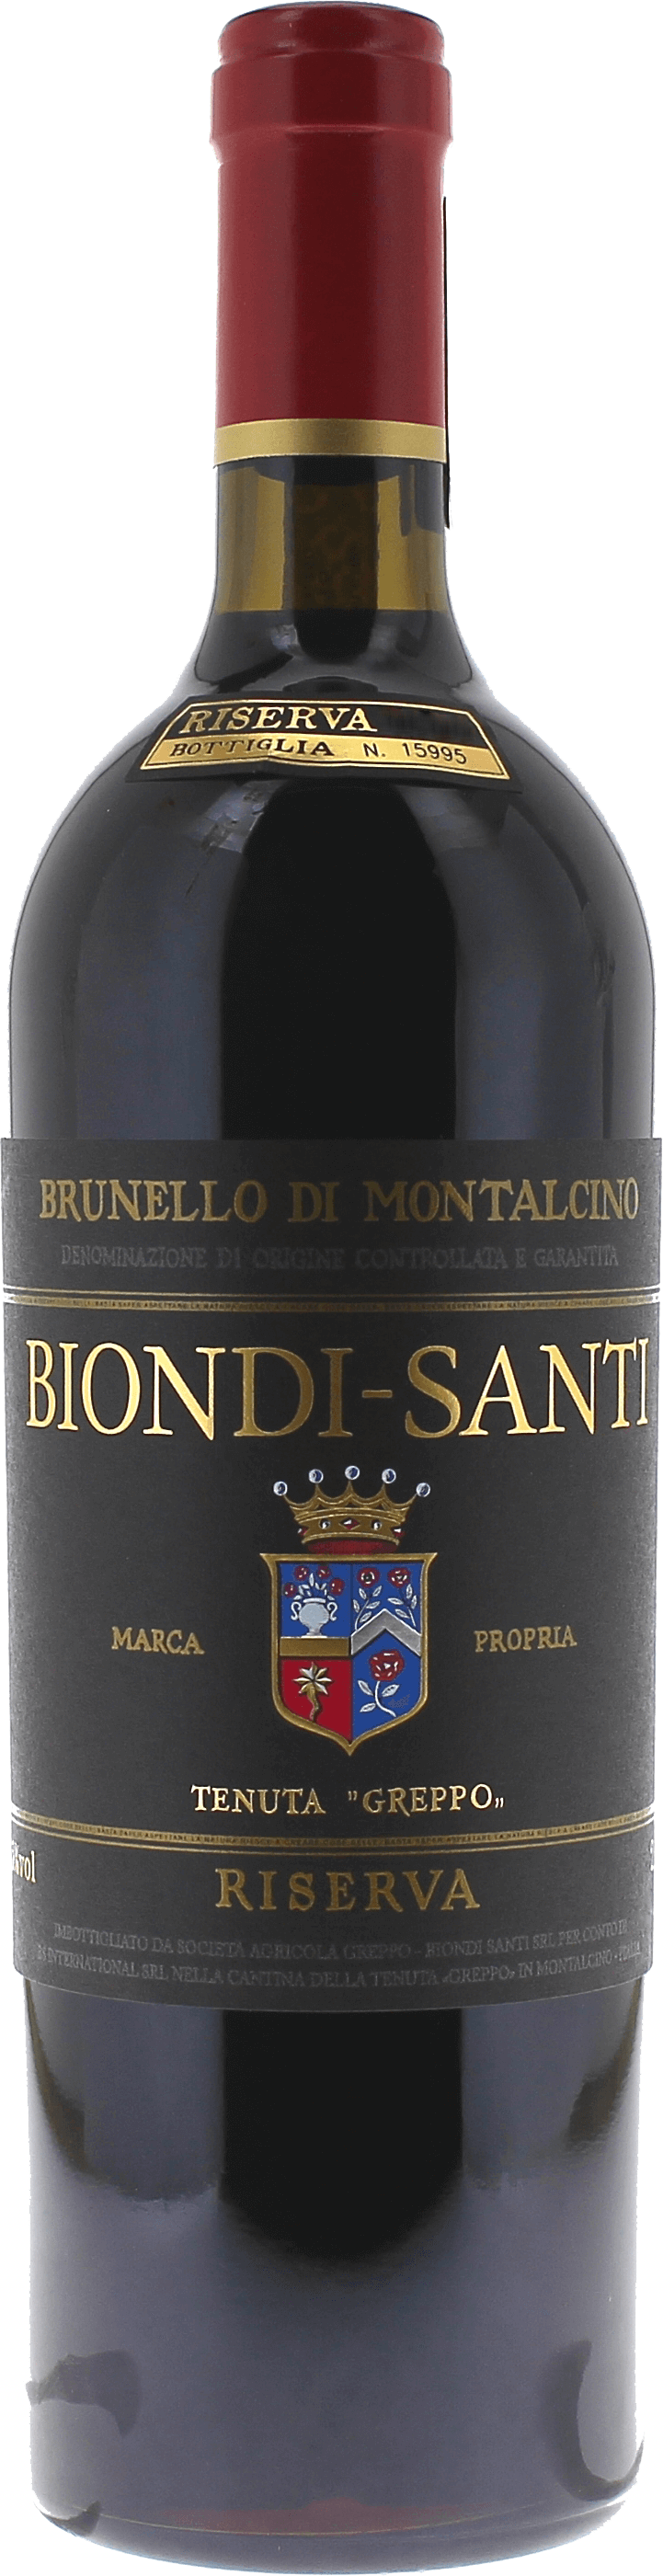 Brunello di montalcino riserva biondi santi 2015  Italie, Vin italien